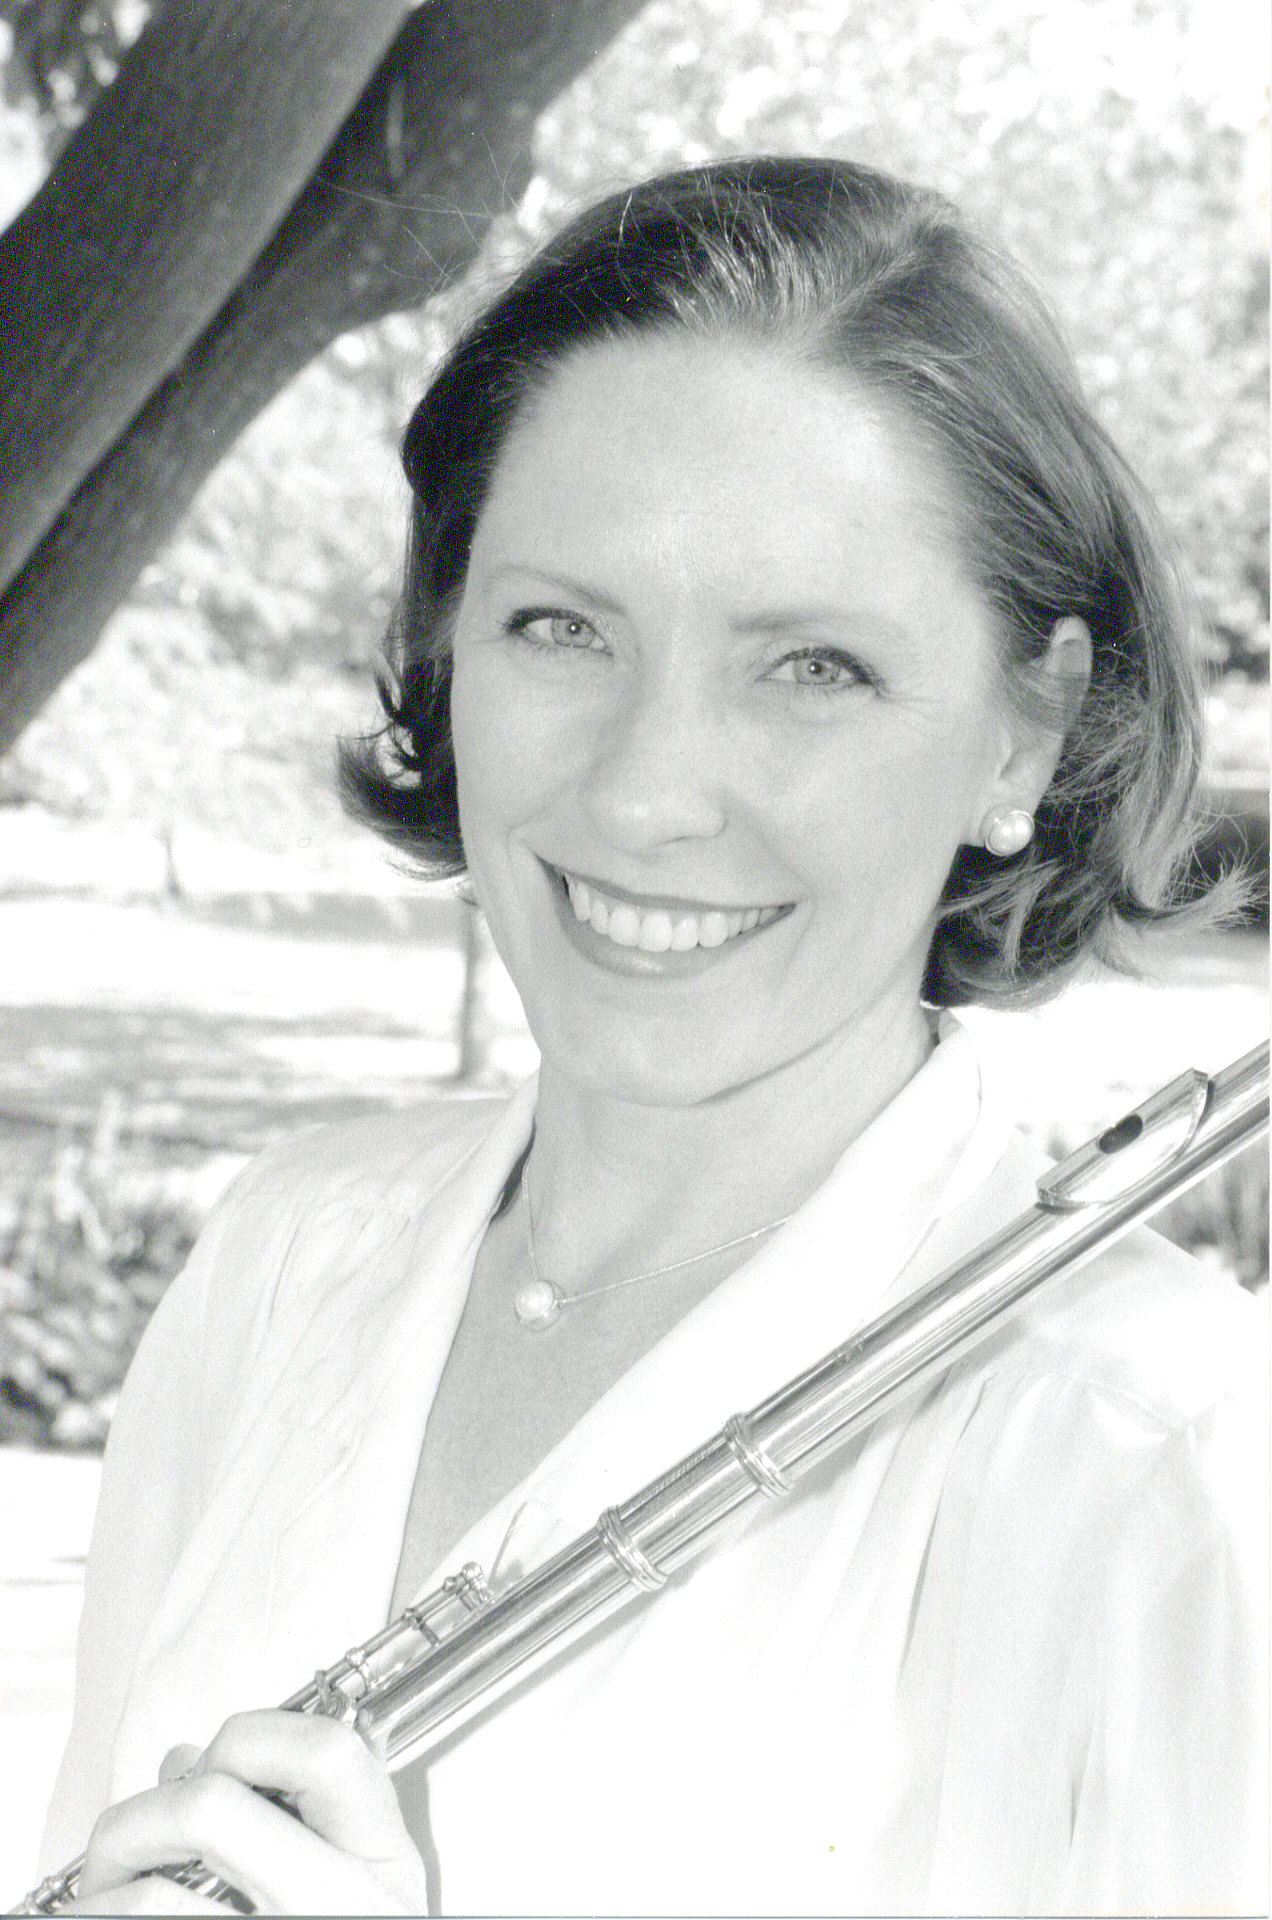 Suzanne flute